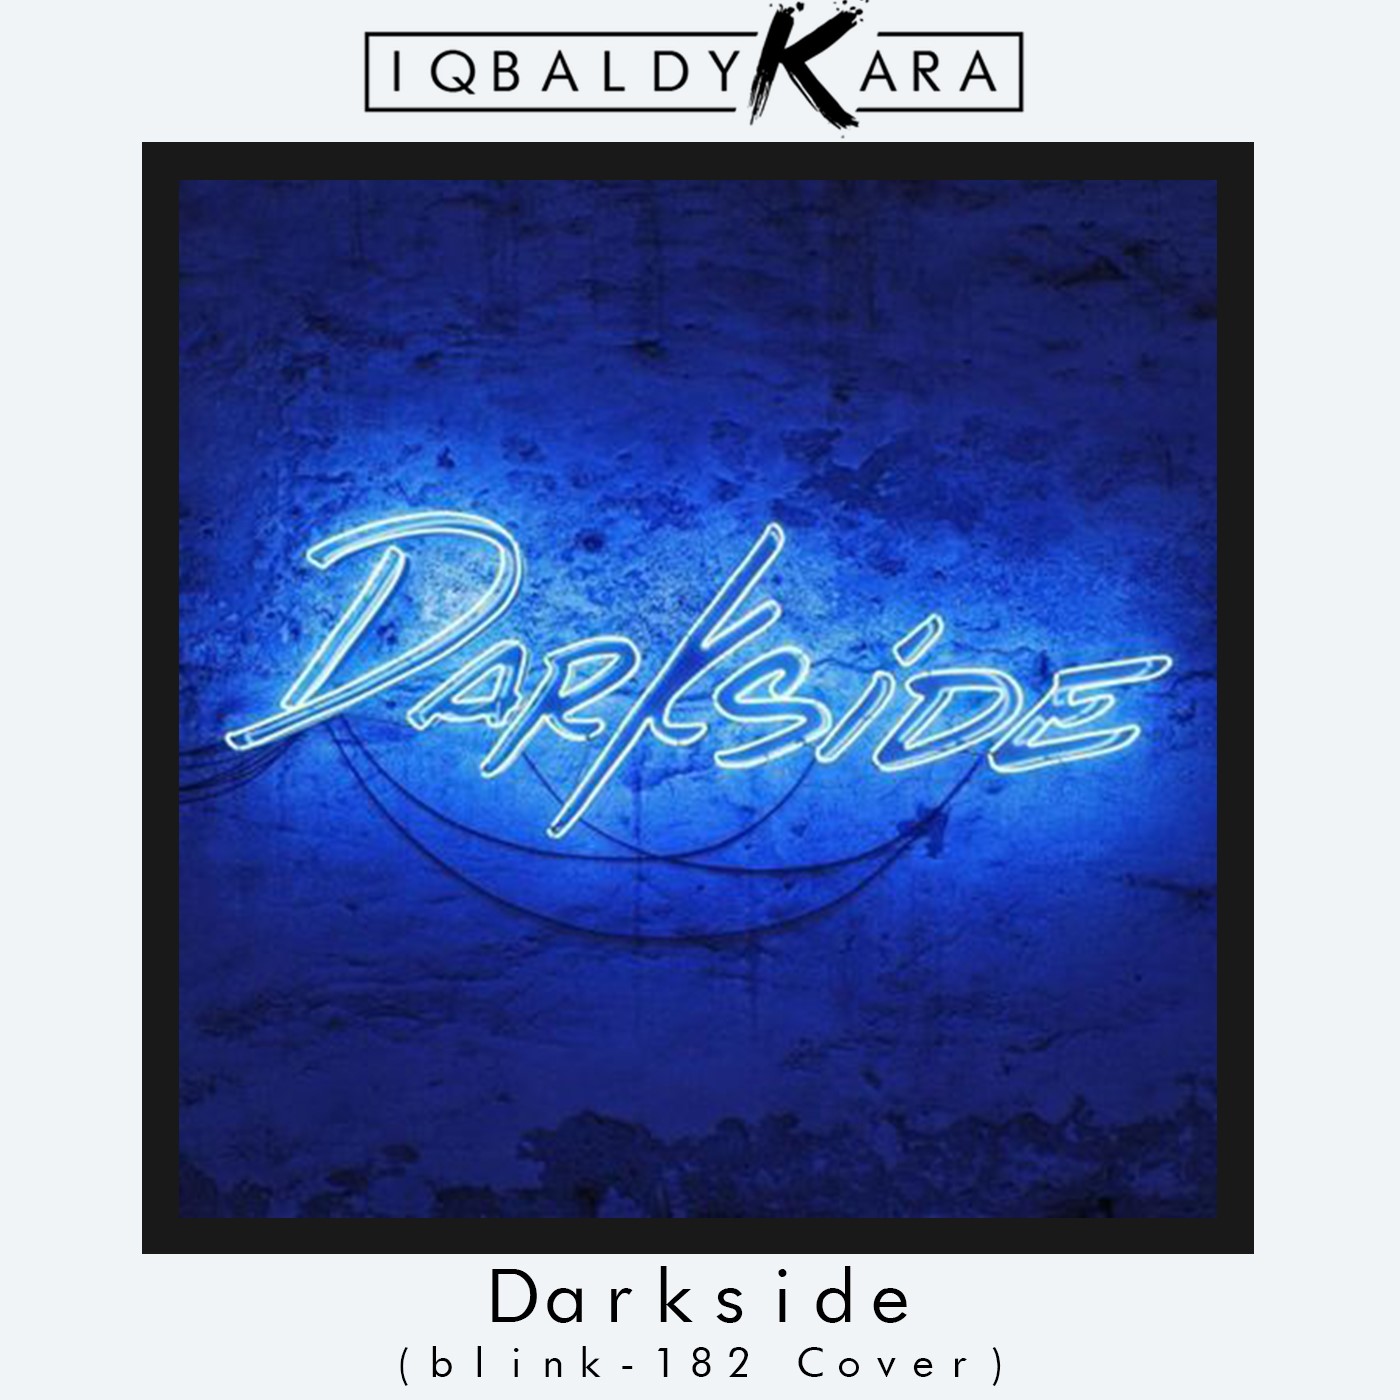 Aflaai Darkside (blink-182 Cover)